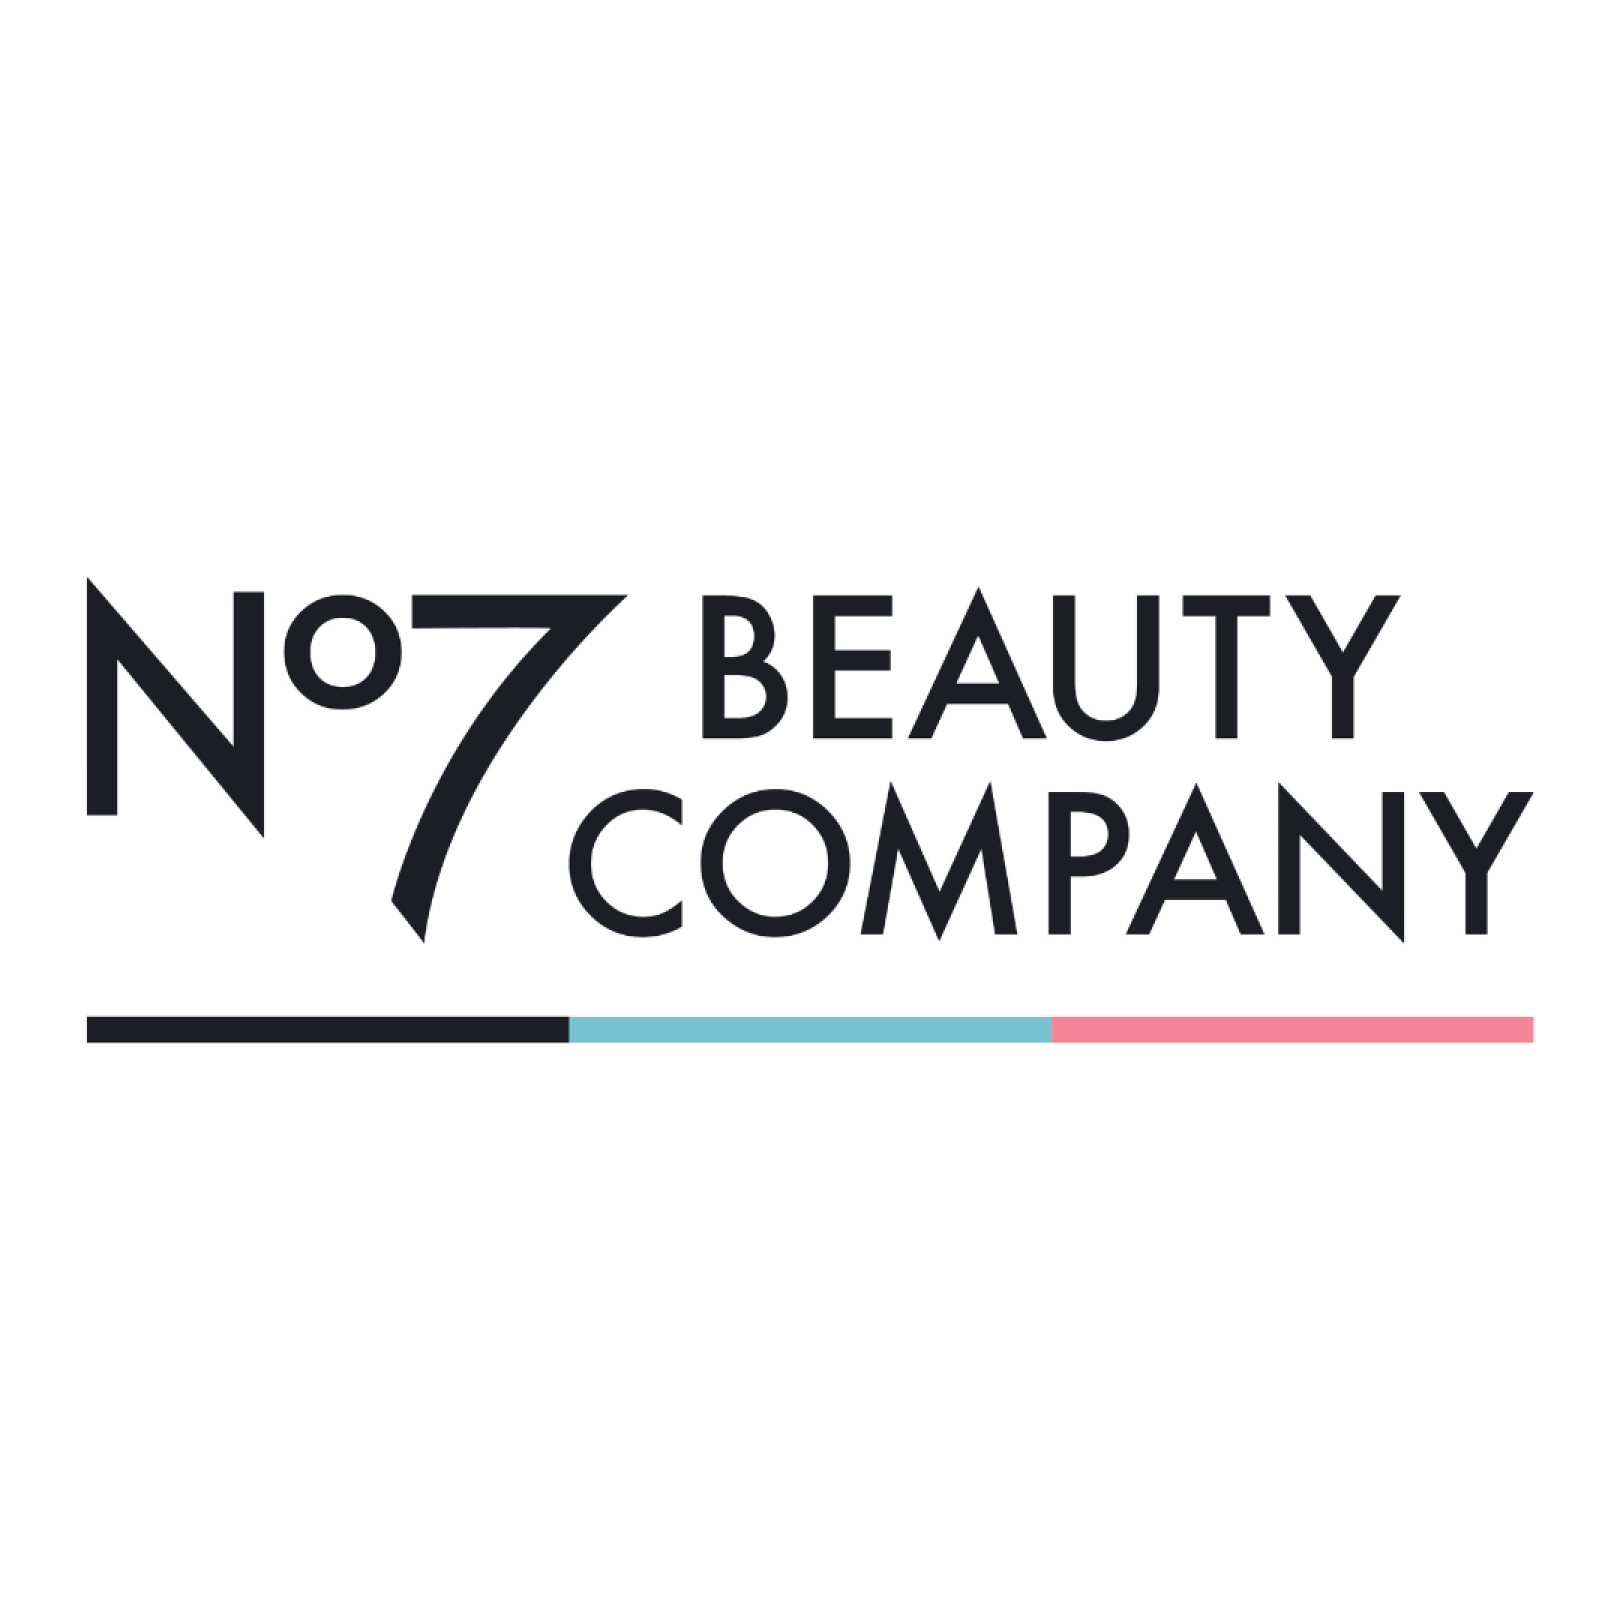 No7 Beauty Company logo